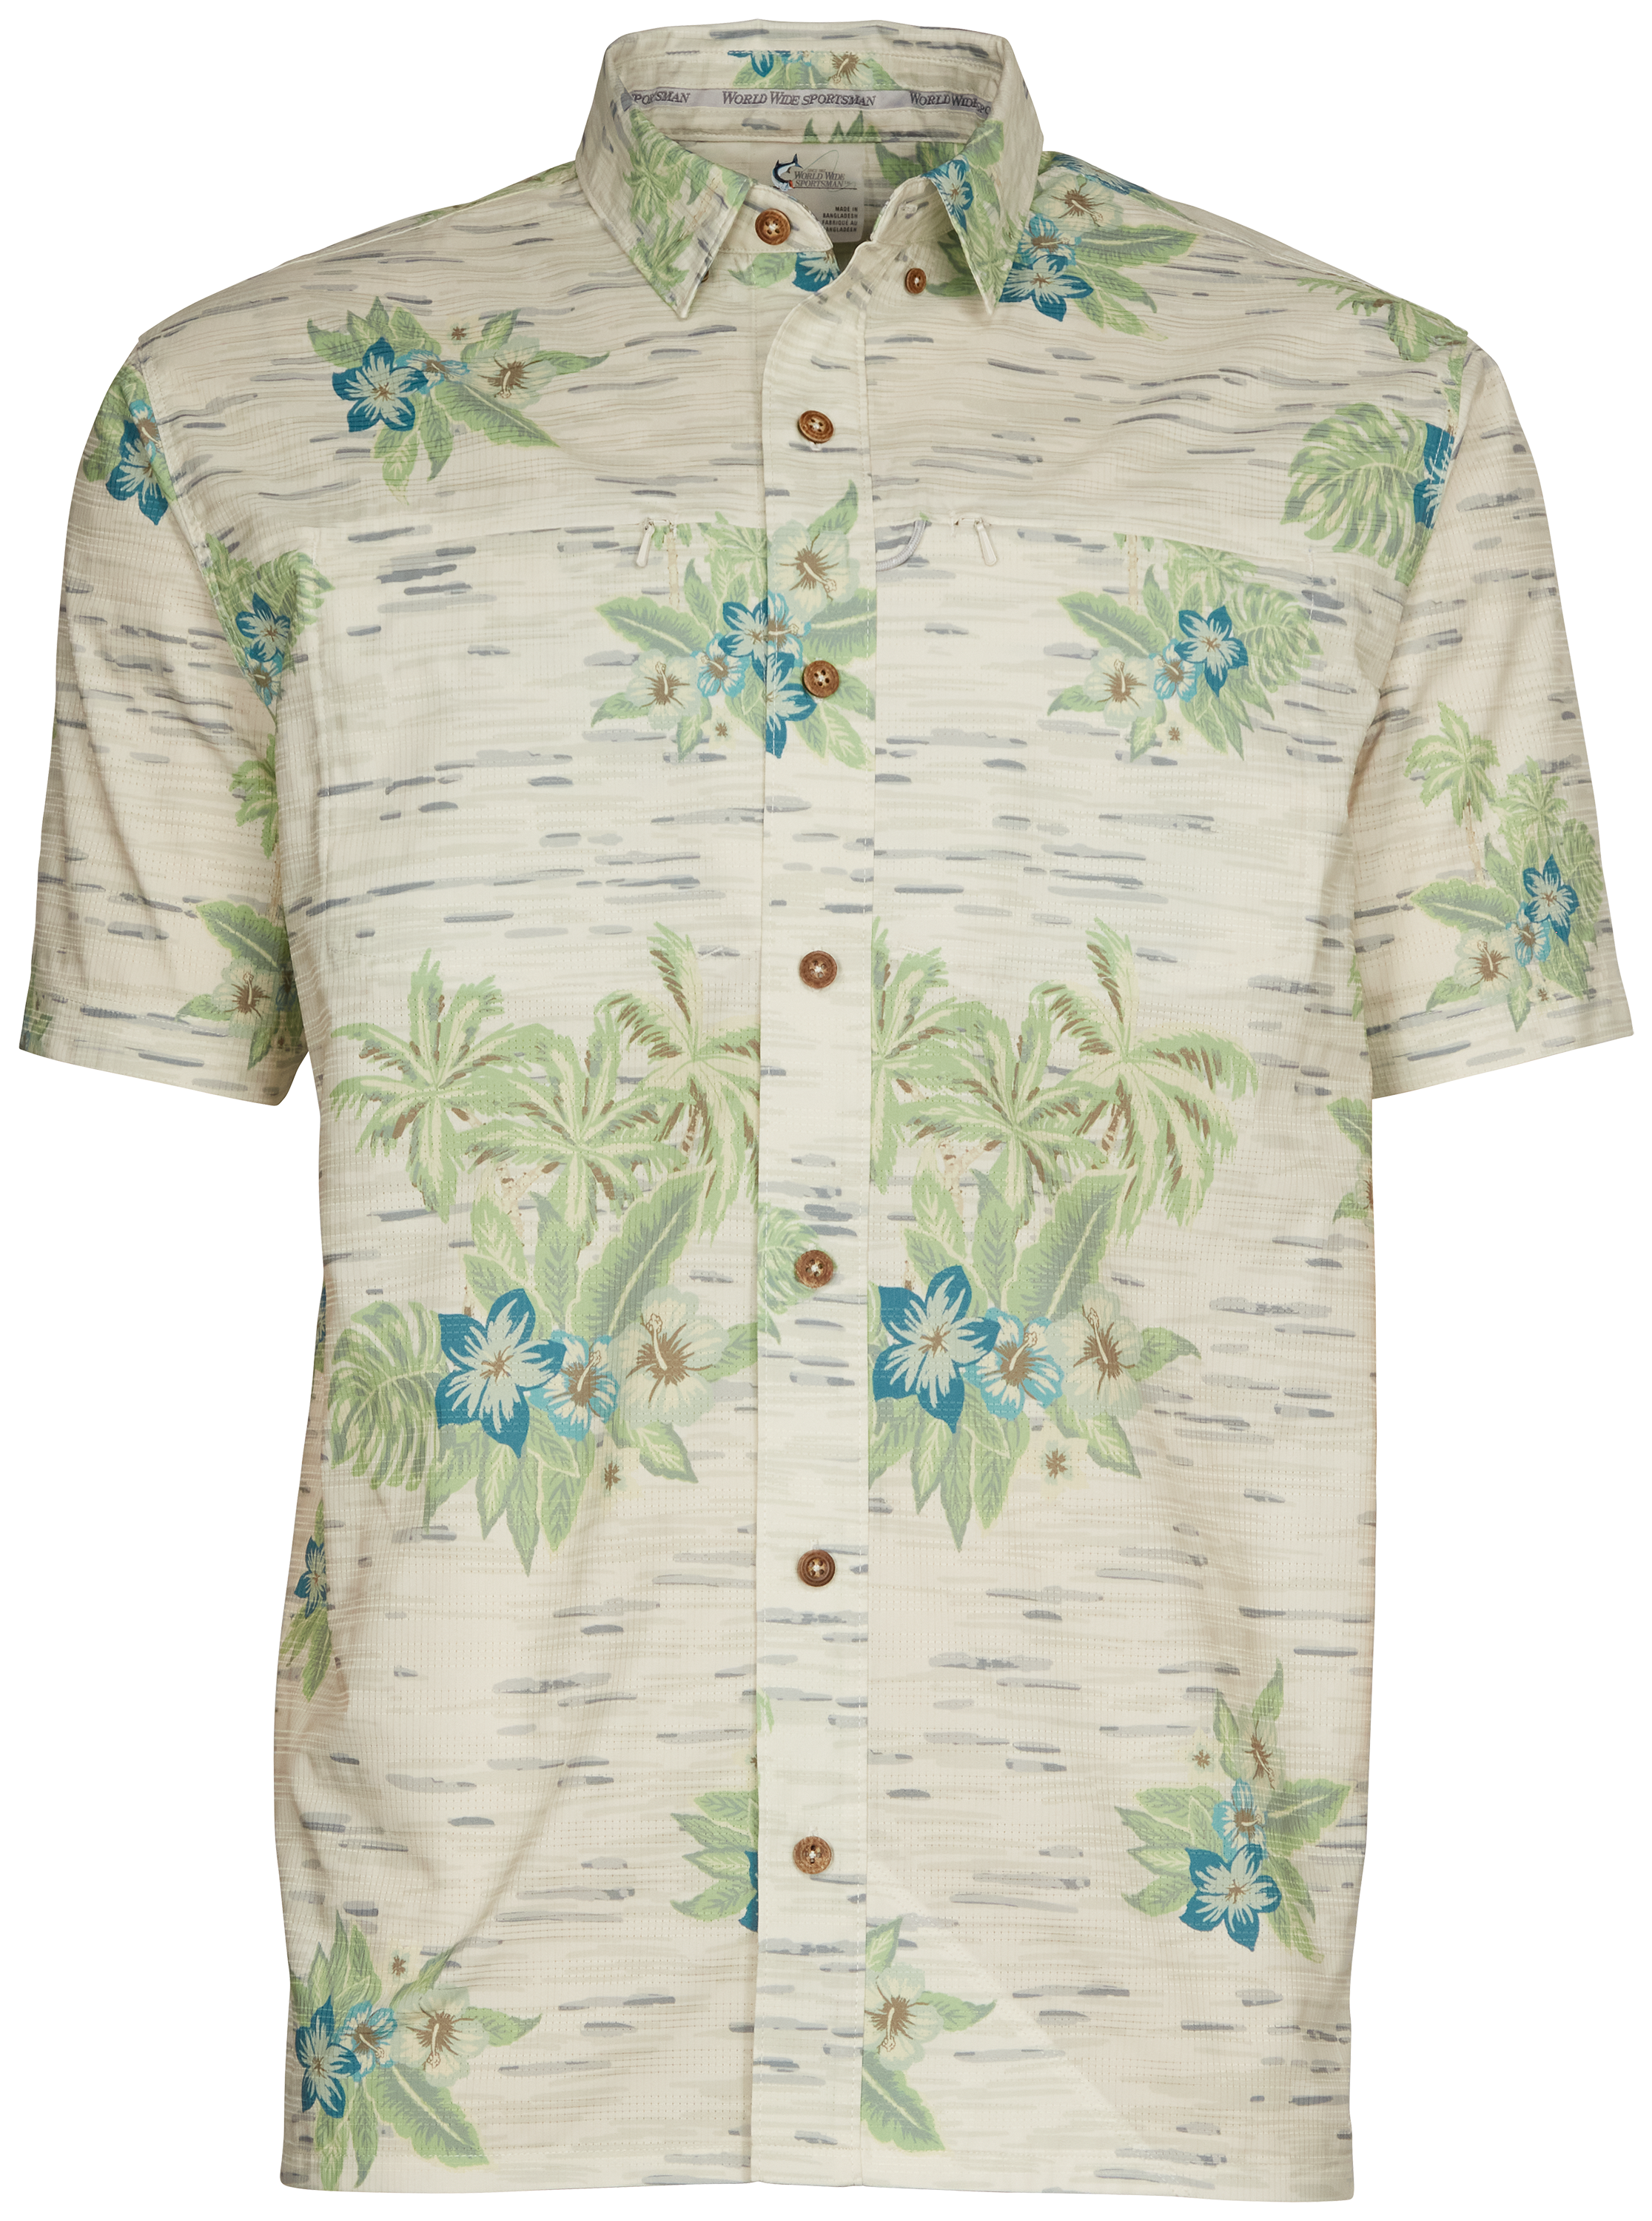 World Wide Sportsman Seacrest Print Short-Sleeve Button-Down Shirt for Men - Gray Hawaiian - M